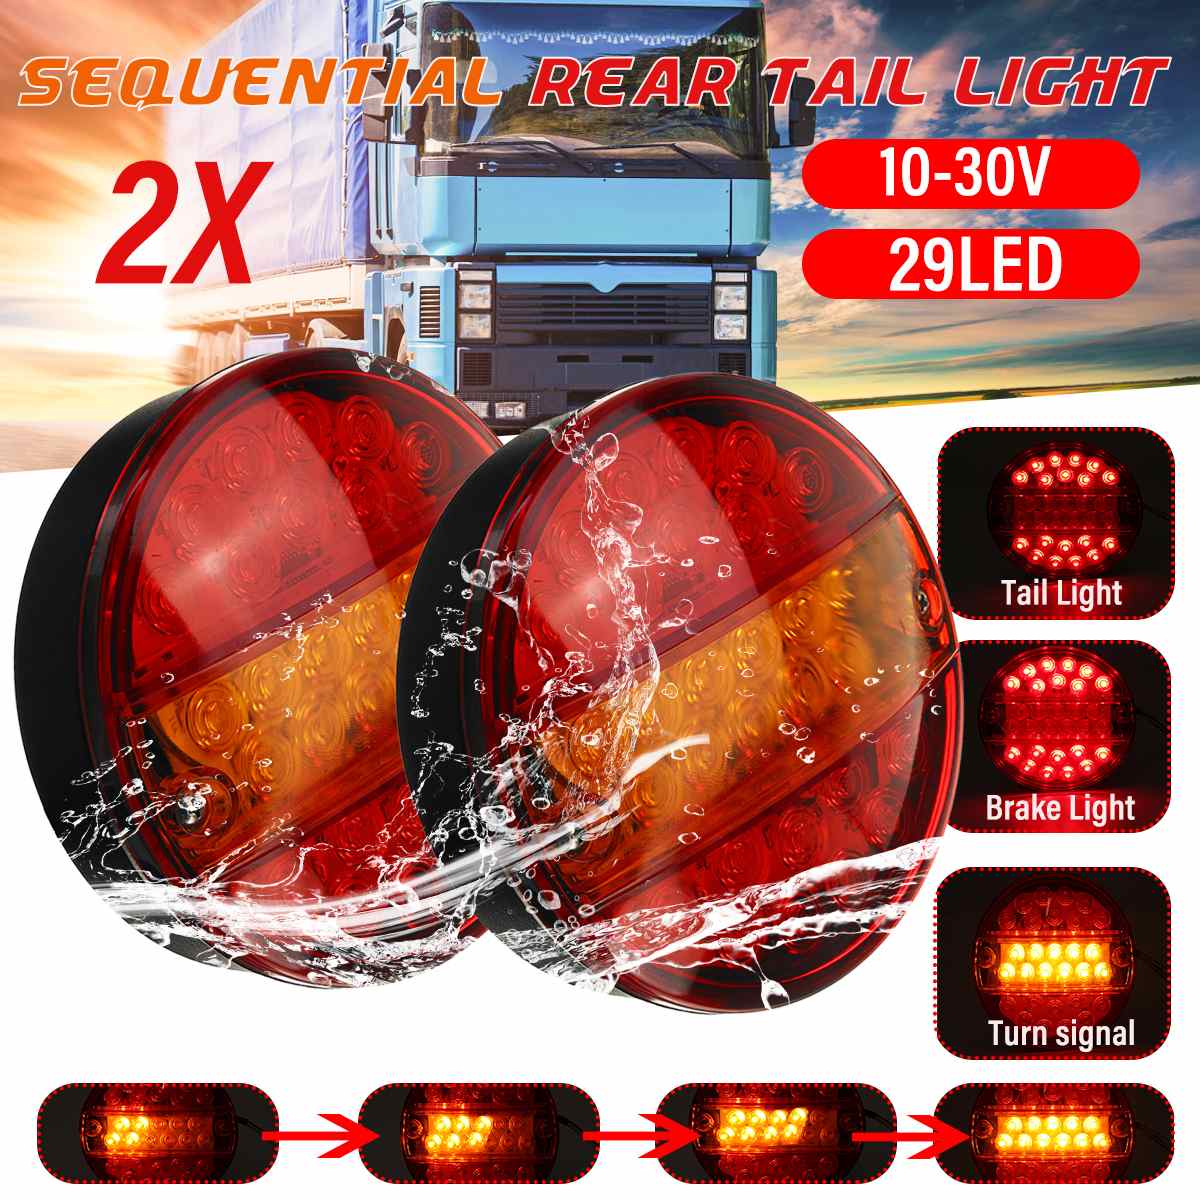 2 Stuks 12V 24V Led Auto Vrachtwagen Achterlicht Achterlicht Remlicht Signal Lamp Indicator 4 Functie voor Trailer Vrachtwagen Bus